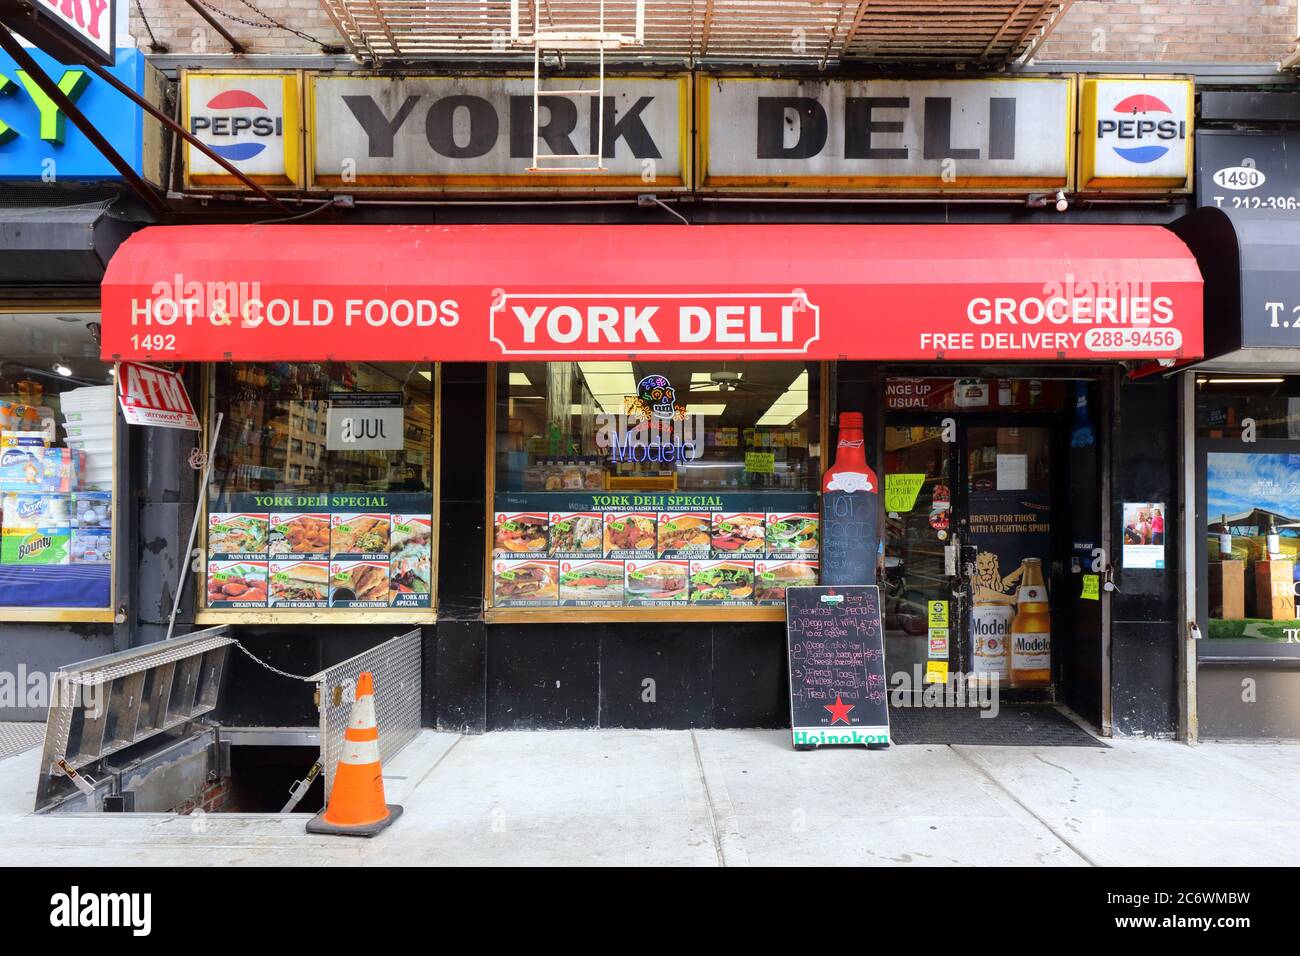 York Delicatessen, 1492 York Ave, New York, NYC Foto von einem Lebensmittelgeschäft, Deli, in der Upper East Side in Manhattan. Stockfoto